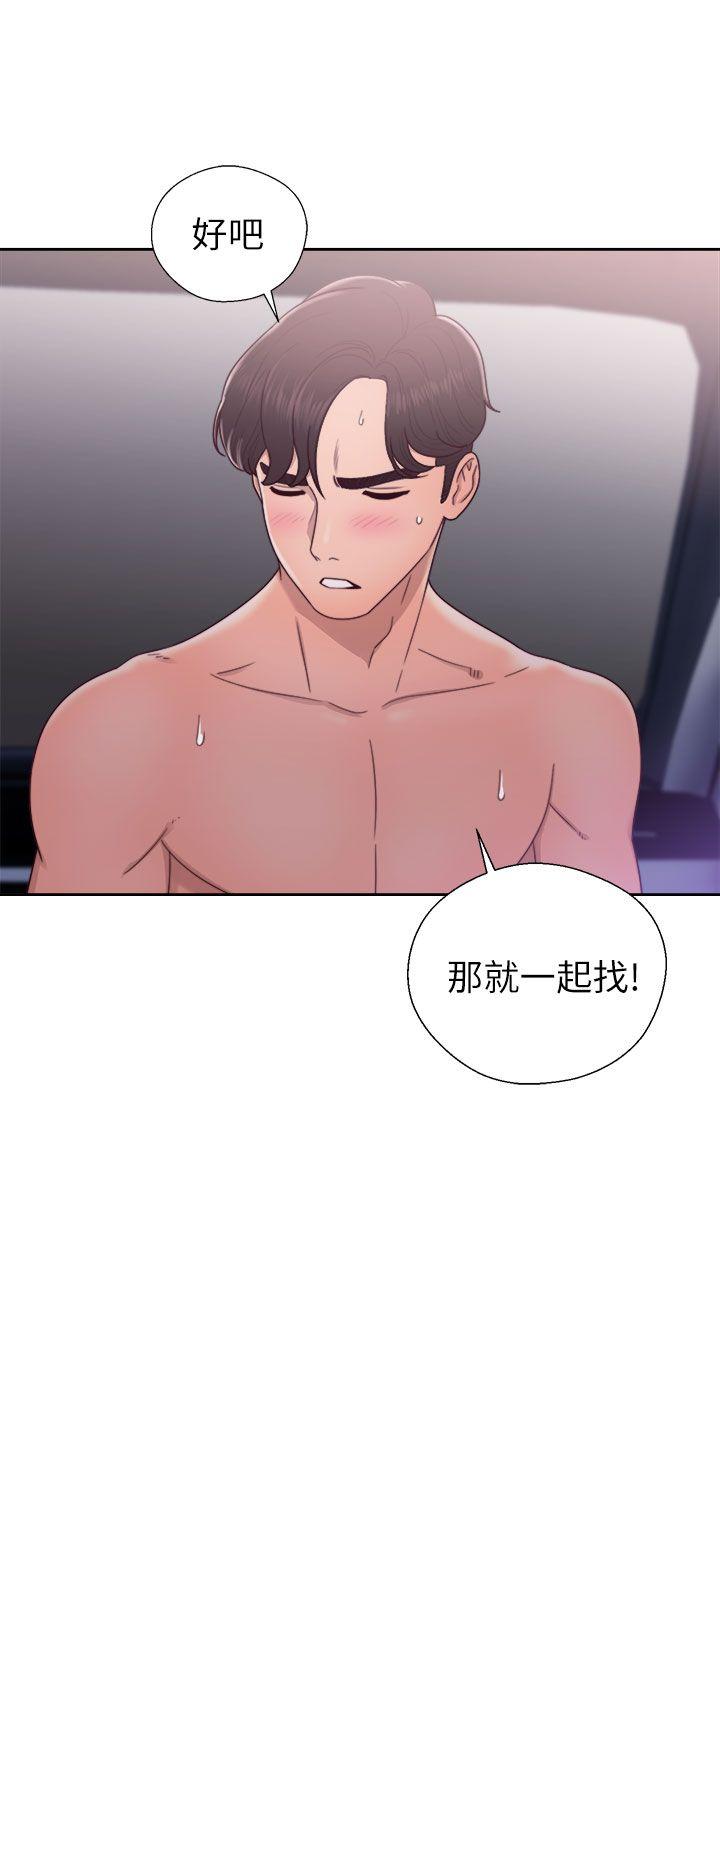 韩国污漫画 青春:逆齡小鮮肉 第21话 26